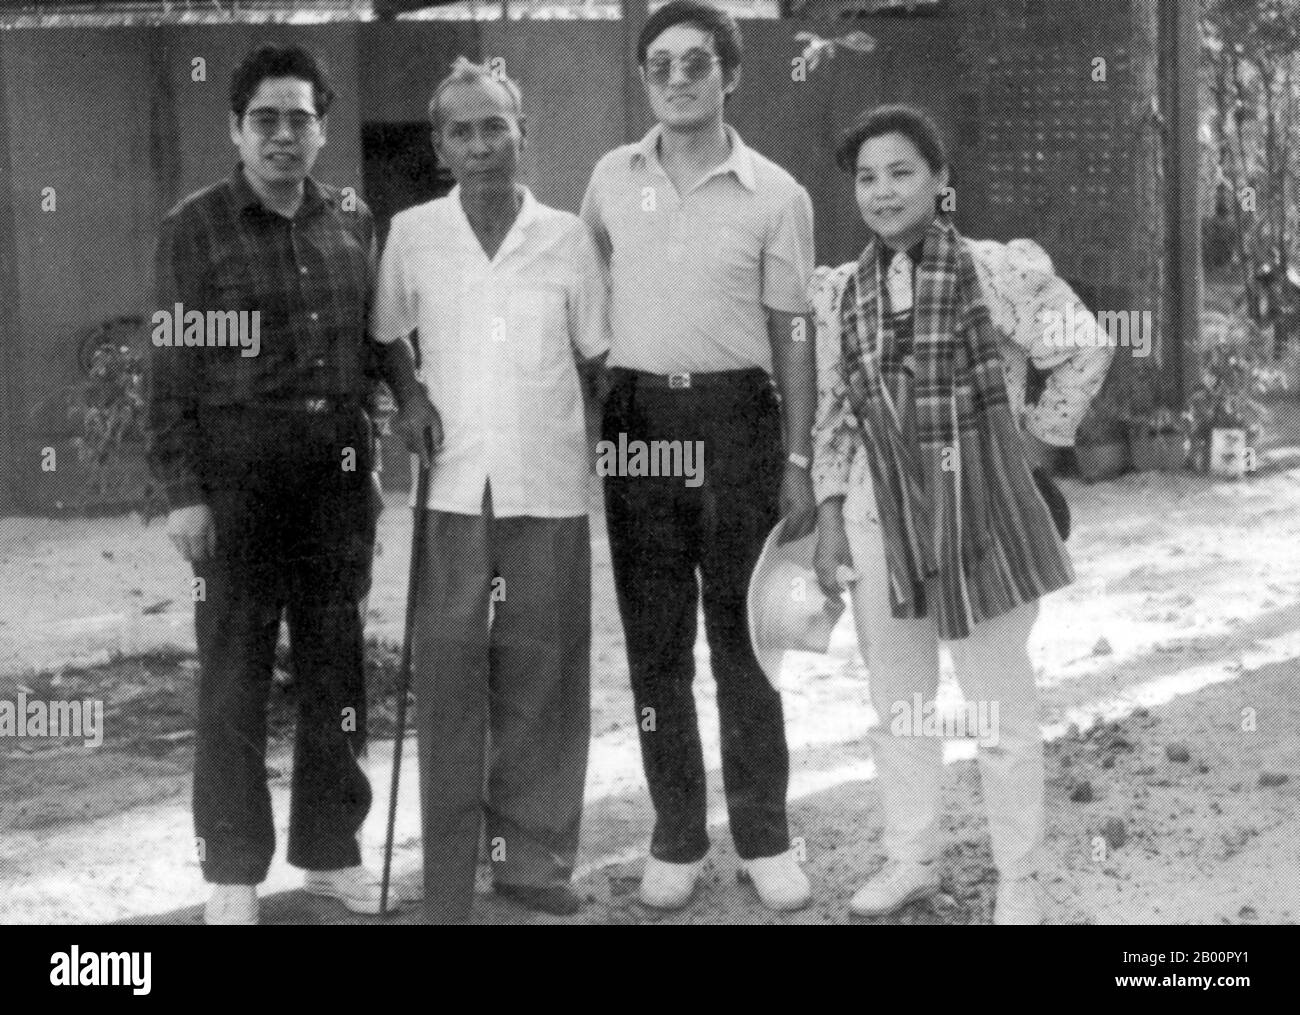 Kambodscha: TA Mok (1924-2006), hochrangiger Militärkommandant der Roten Khmer, mit chinesischen Beratern. Zu dieser Zeit hatte Mok ein Bein zu einer Landminenexplosion verloren. Khmer Rouge Führung: Kambodscha: TA Mok war der Nom de Guerre von Chhit Choeun (1924. – 21. Juli 2006). Militärkommandant der Streitkräfte der Demokratischen Kampuchea (Khmer Rouge), er war auch (von seinen Feinden) als "der Schlächter" bekannt. Stockfoto